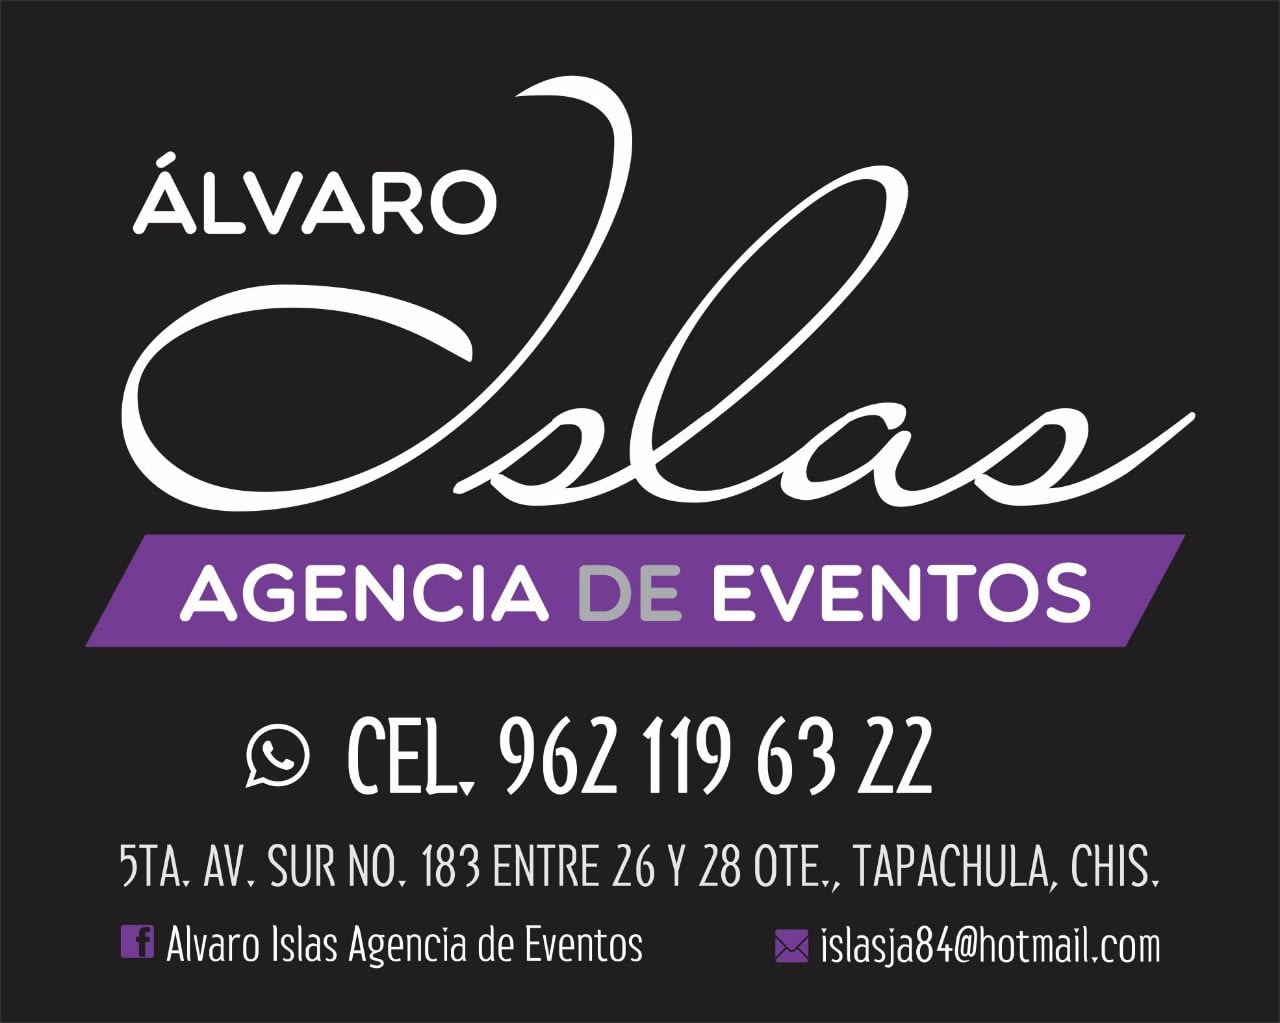 Álvaro Islas Agencia de Eventos